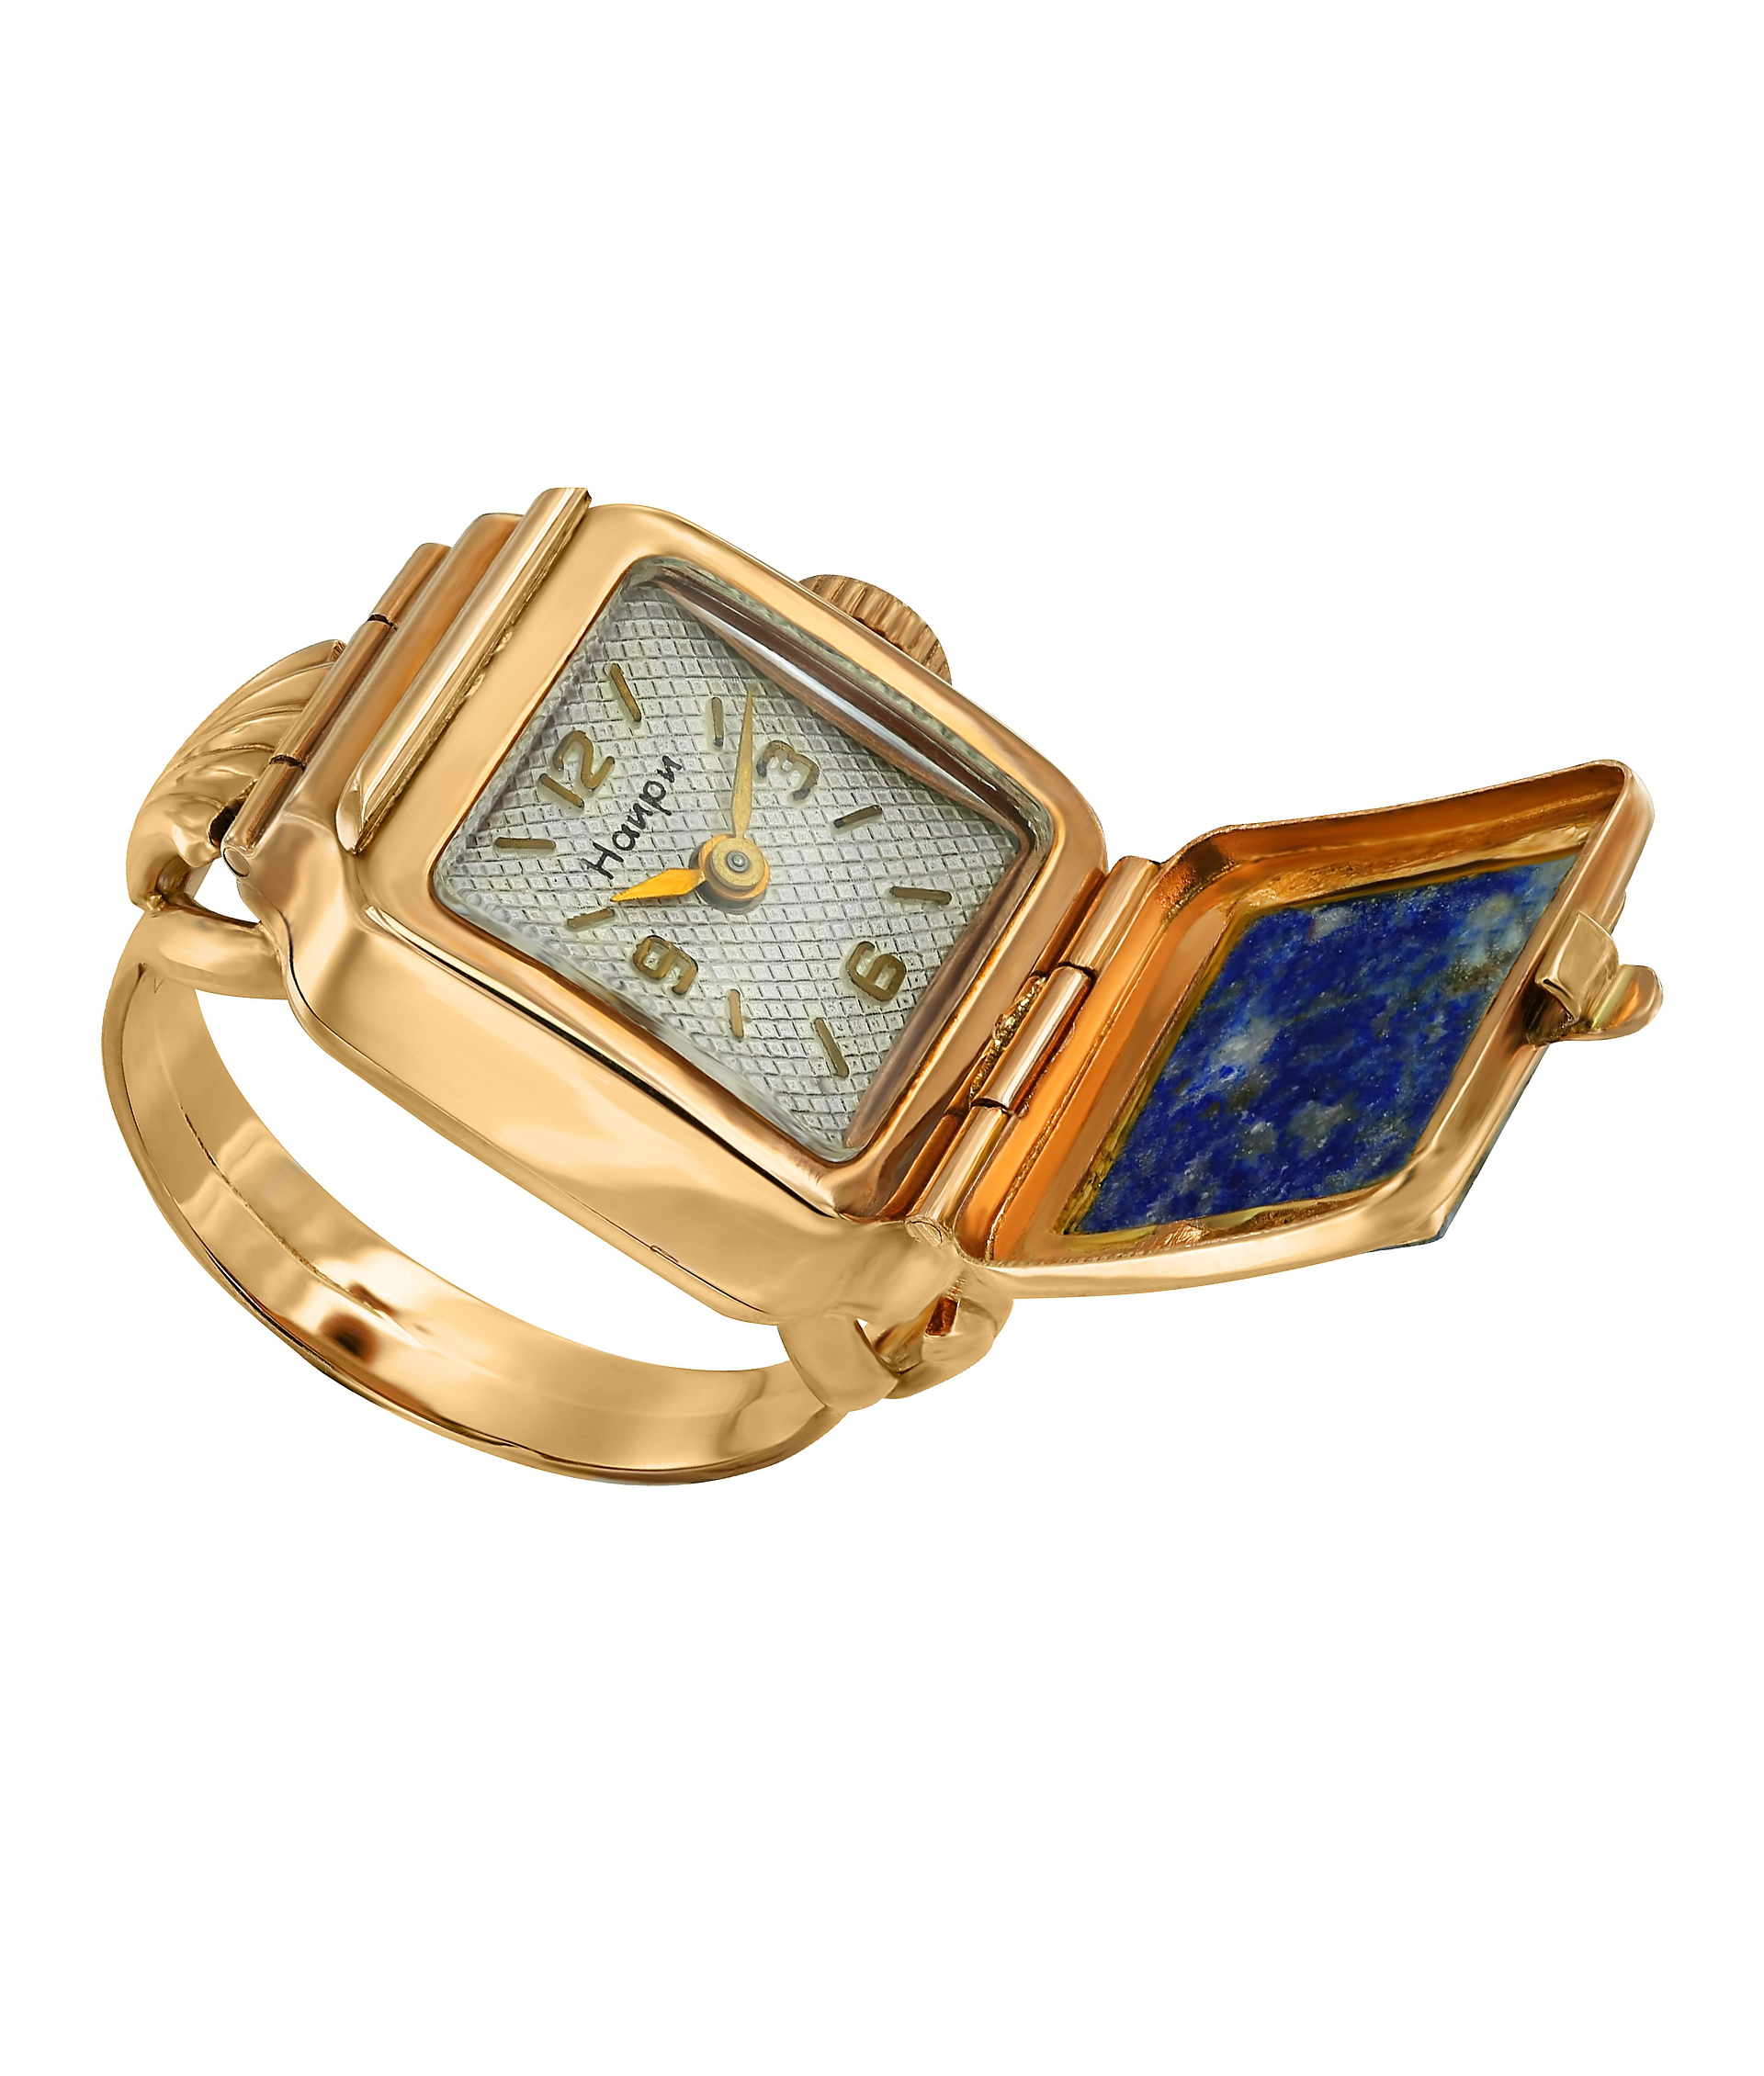 Кольцо-часы "Наири" из красного золота 583 пробы 5473 - купить сегодня за 33000 руб. Интернет ломбард «Тик – Так» в Москве